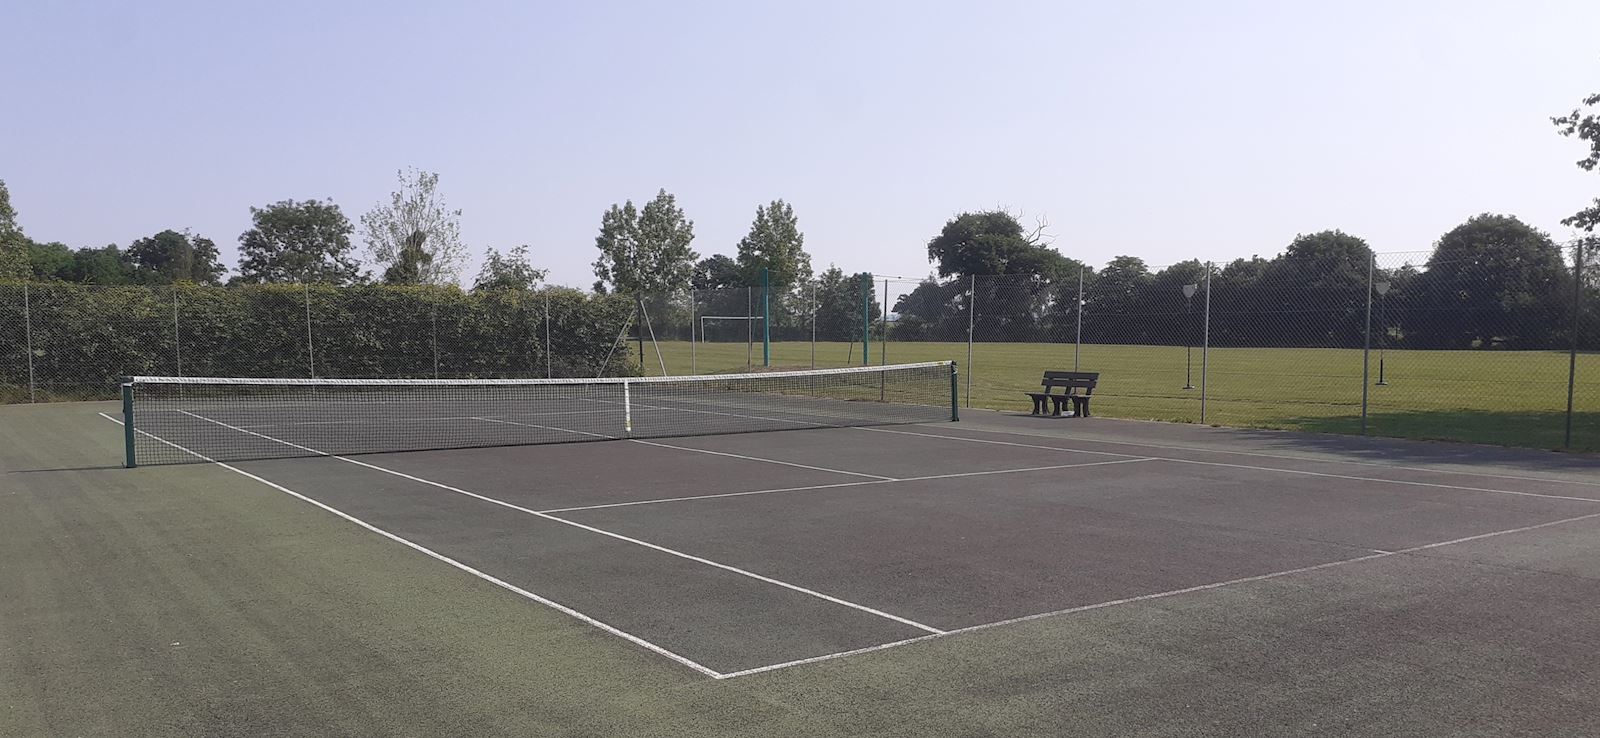 Apperley Tennis Club